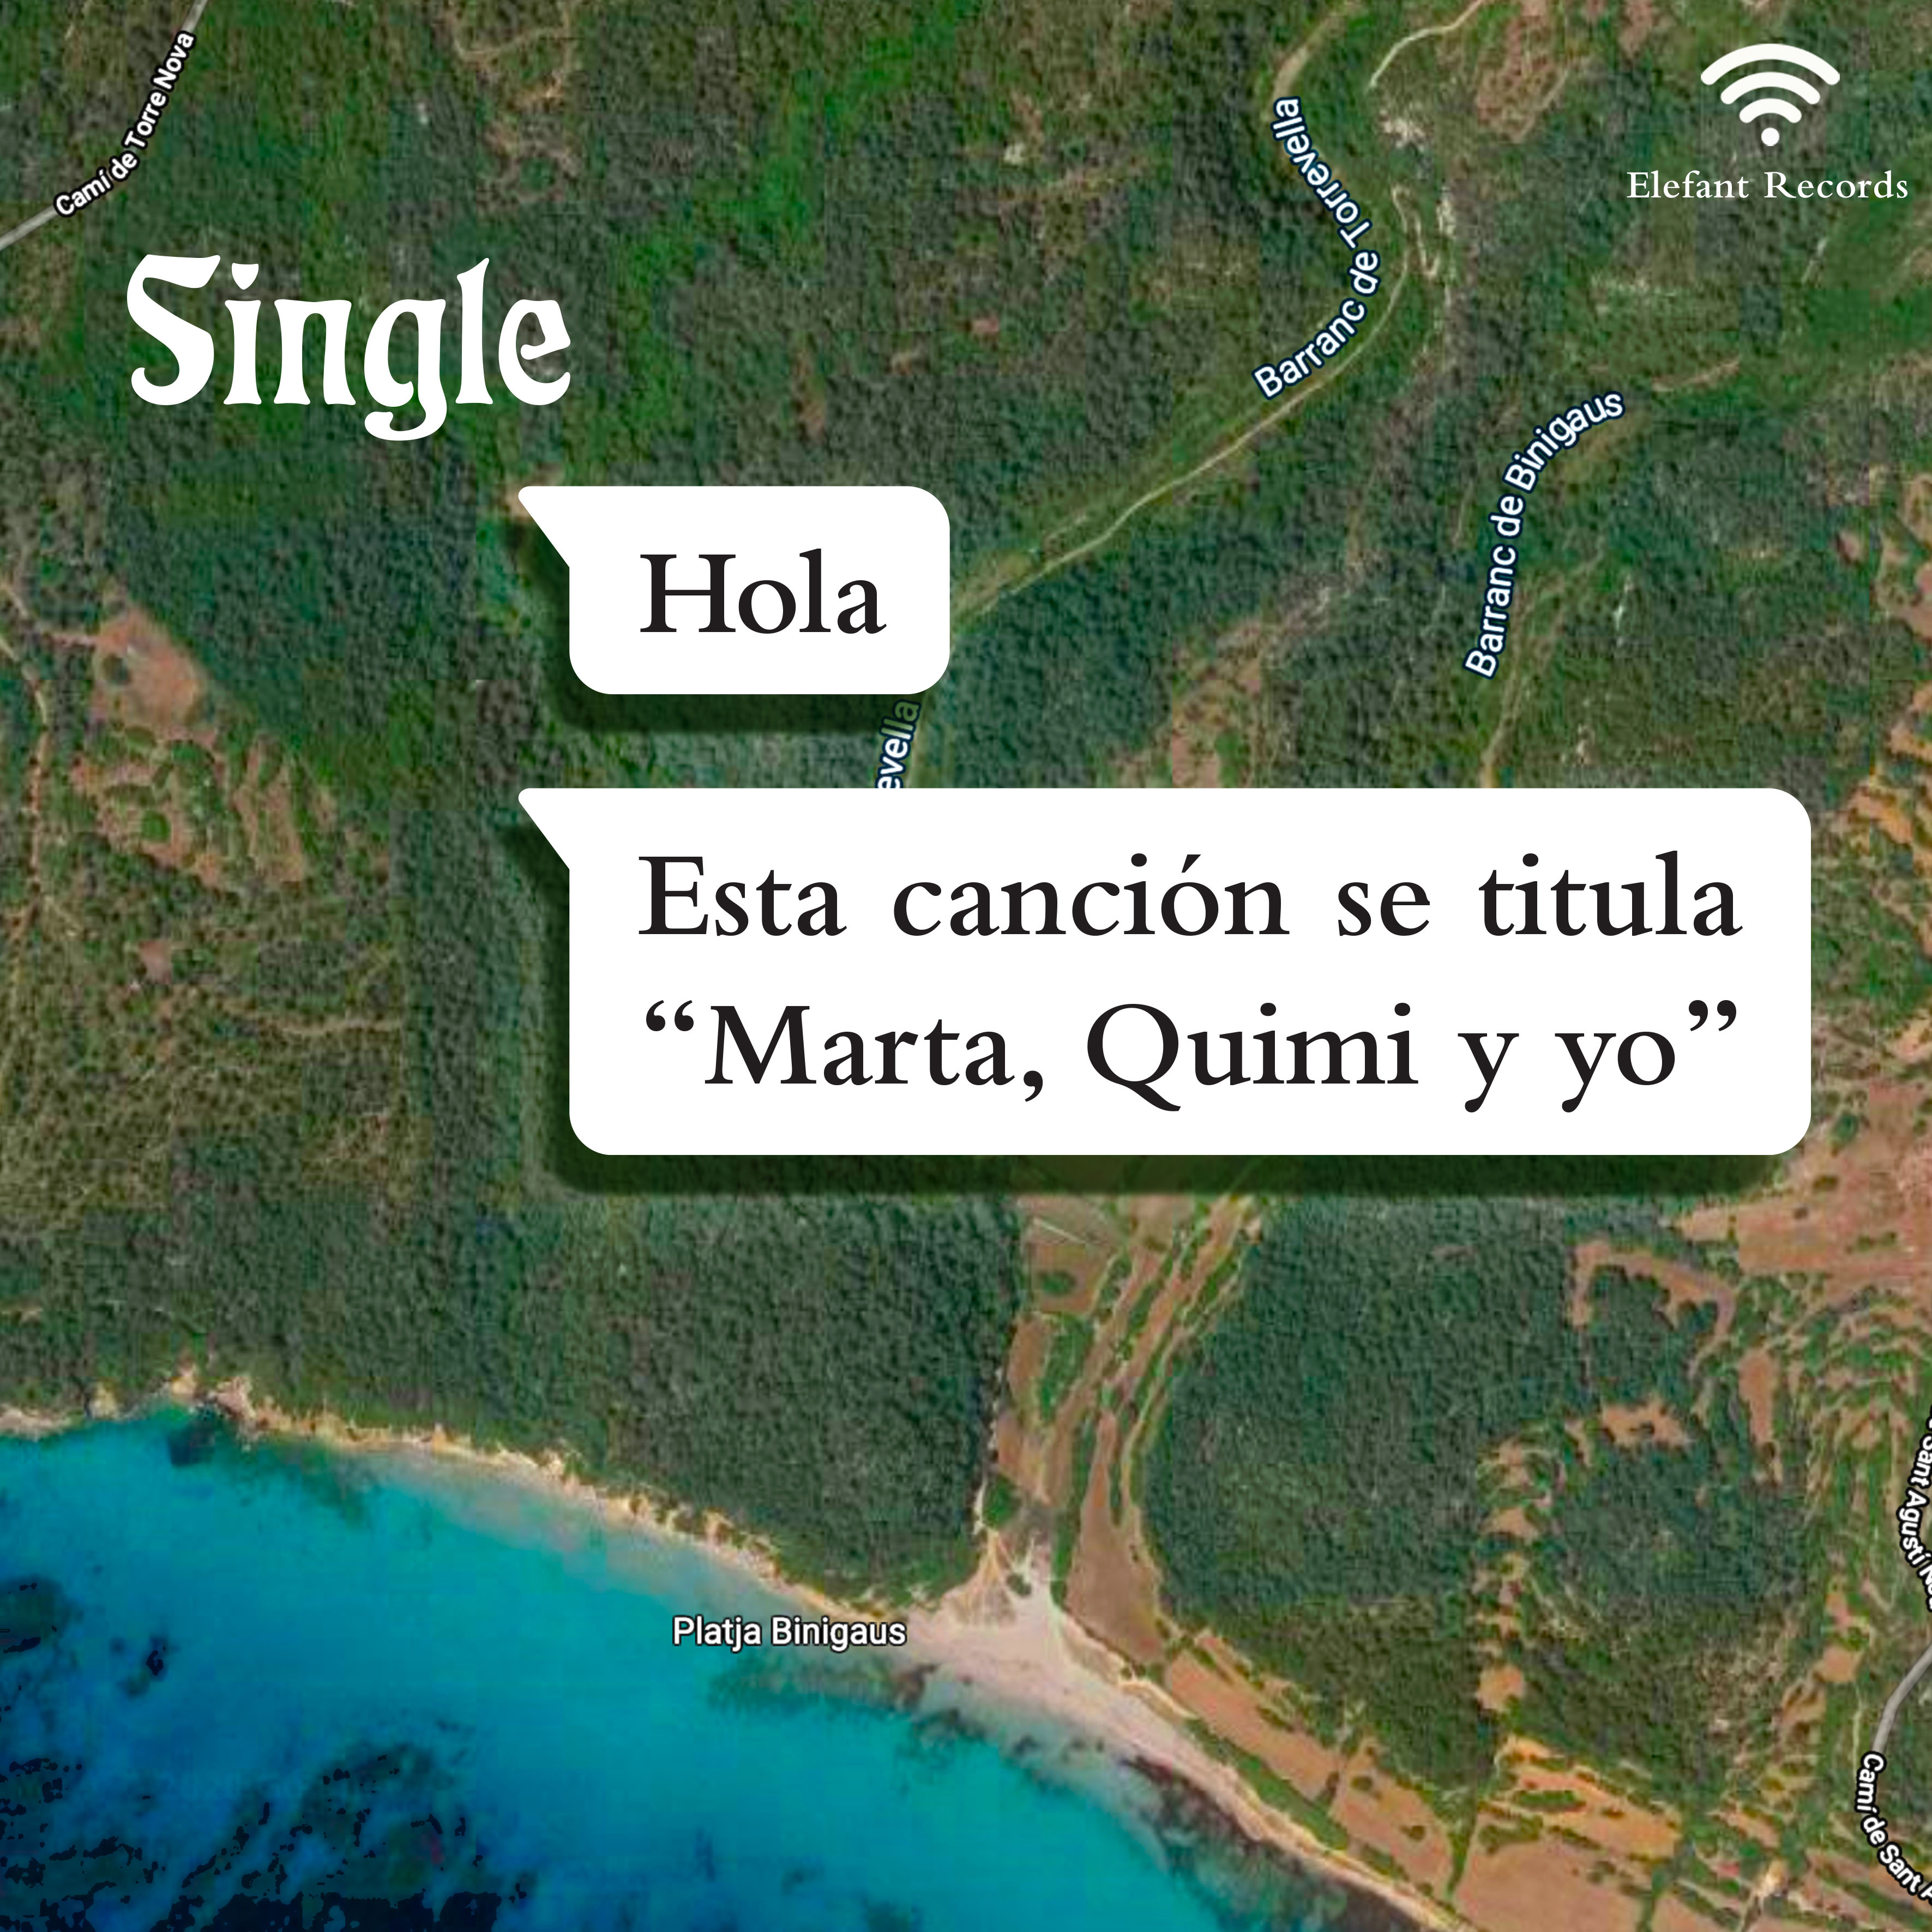 Single "Marta, Quimi y Yo" Single Digital